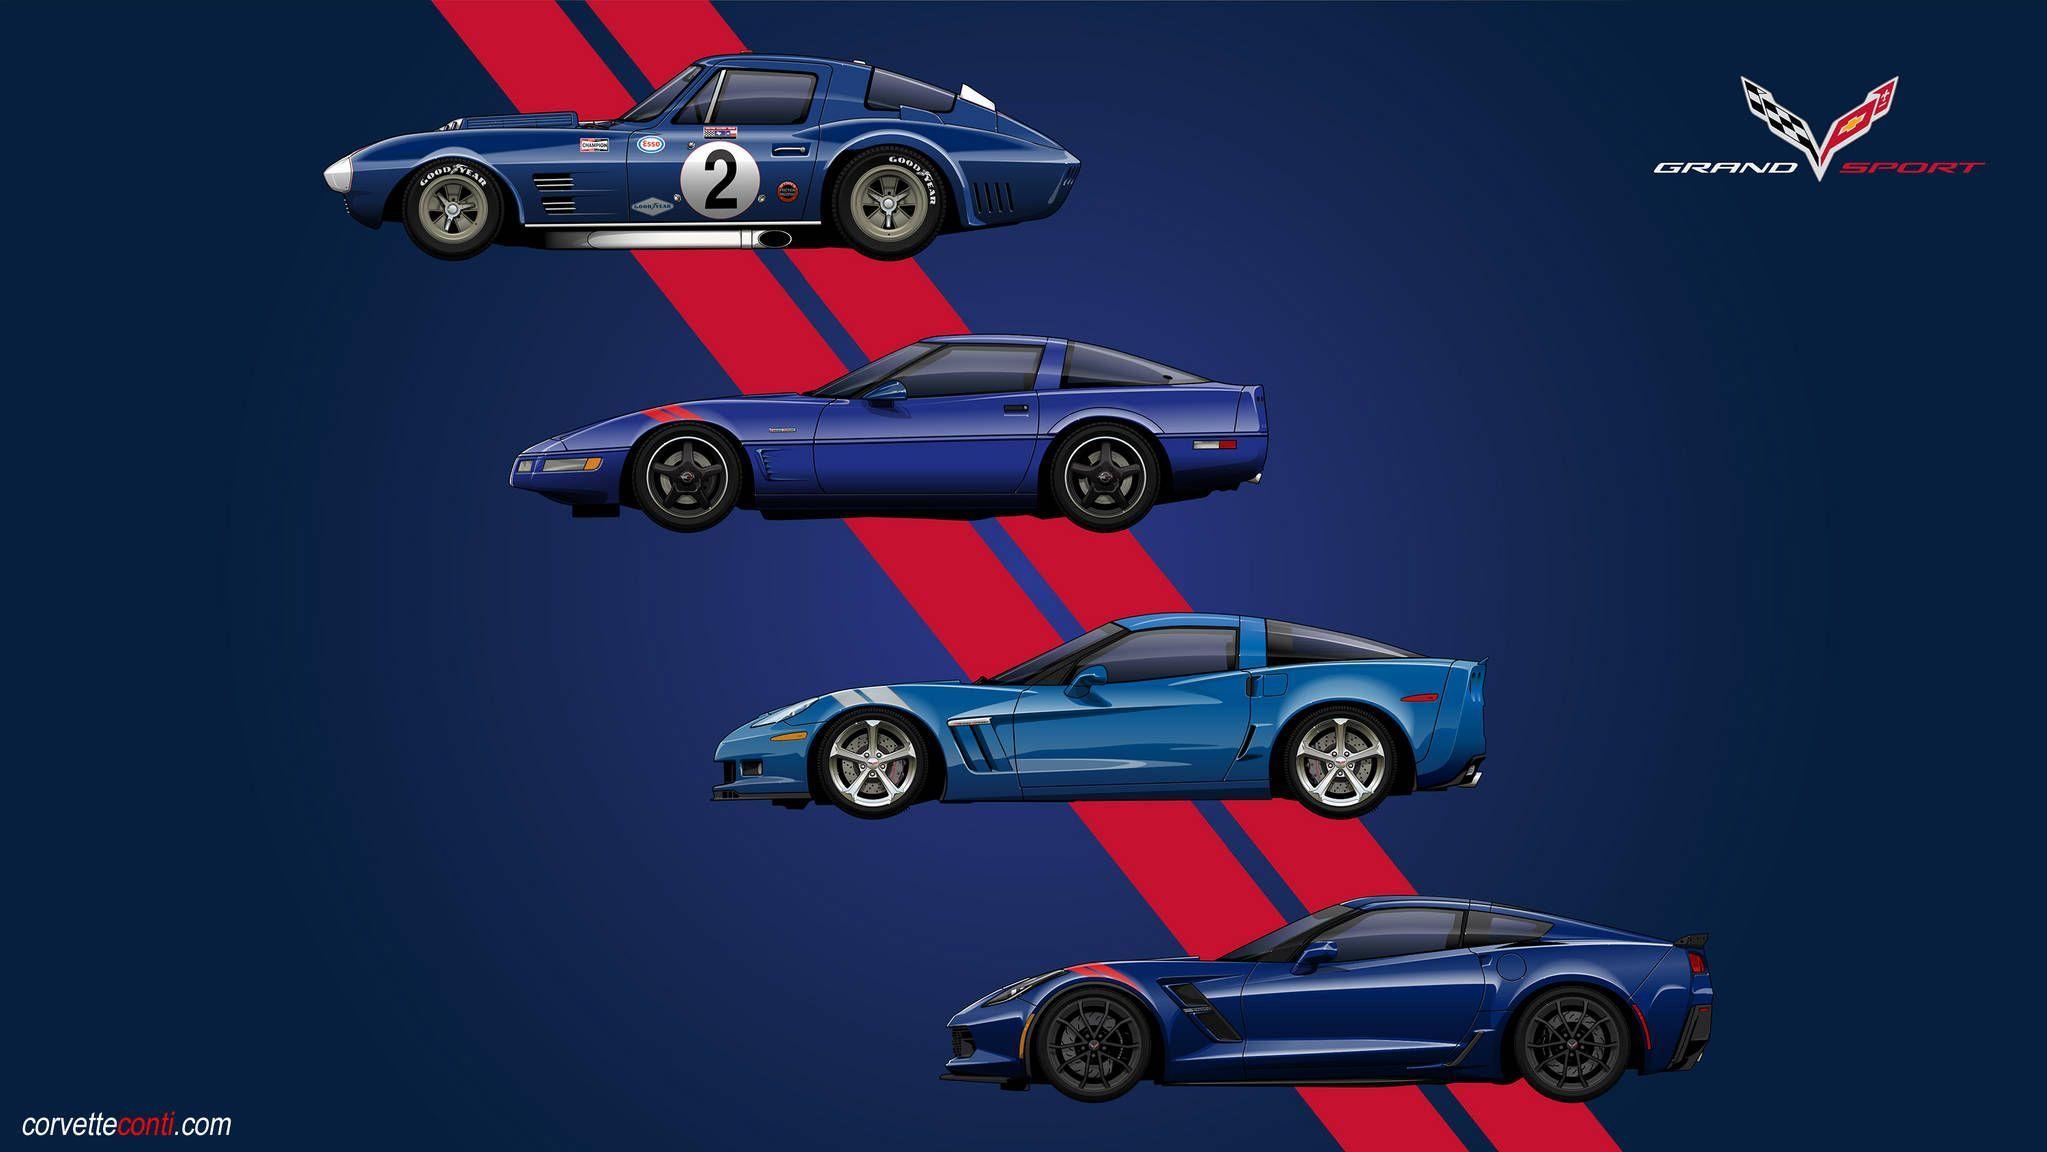 Chevrolet Corvette Grand Sport Wallpapers